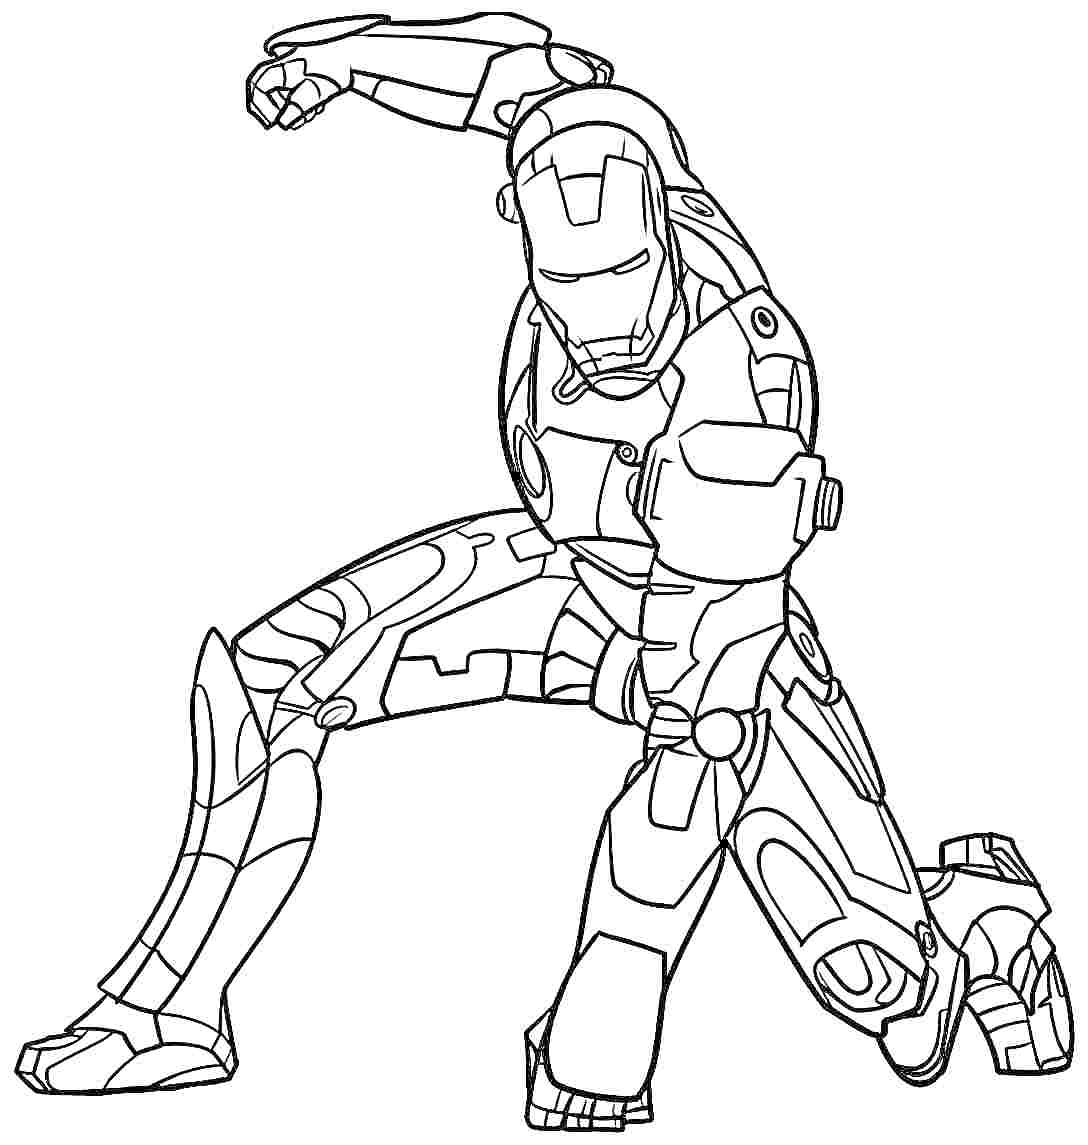 Раскраска Железный человек в боевой позе, на одном колене, с поднятым кулаком